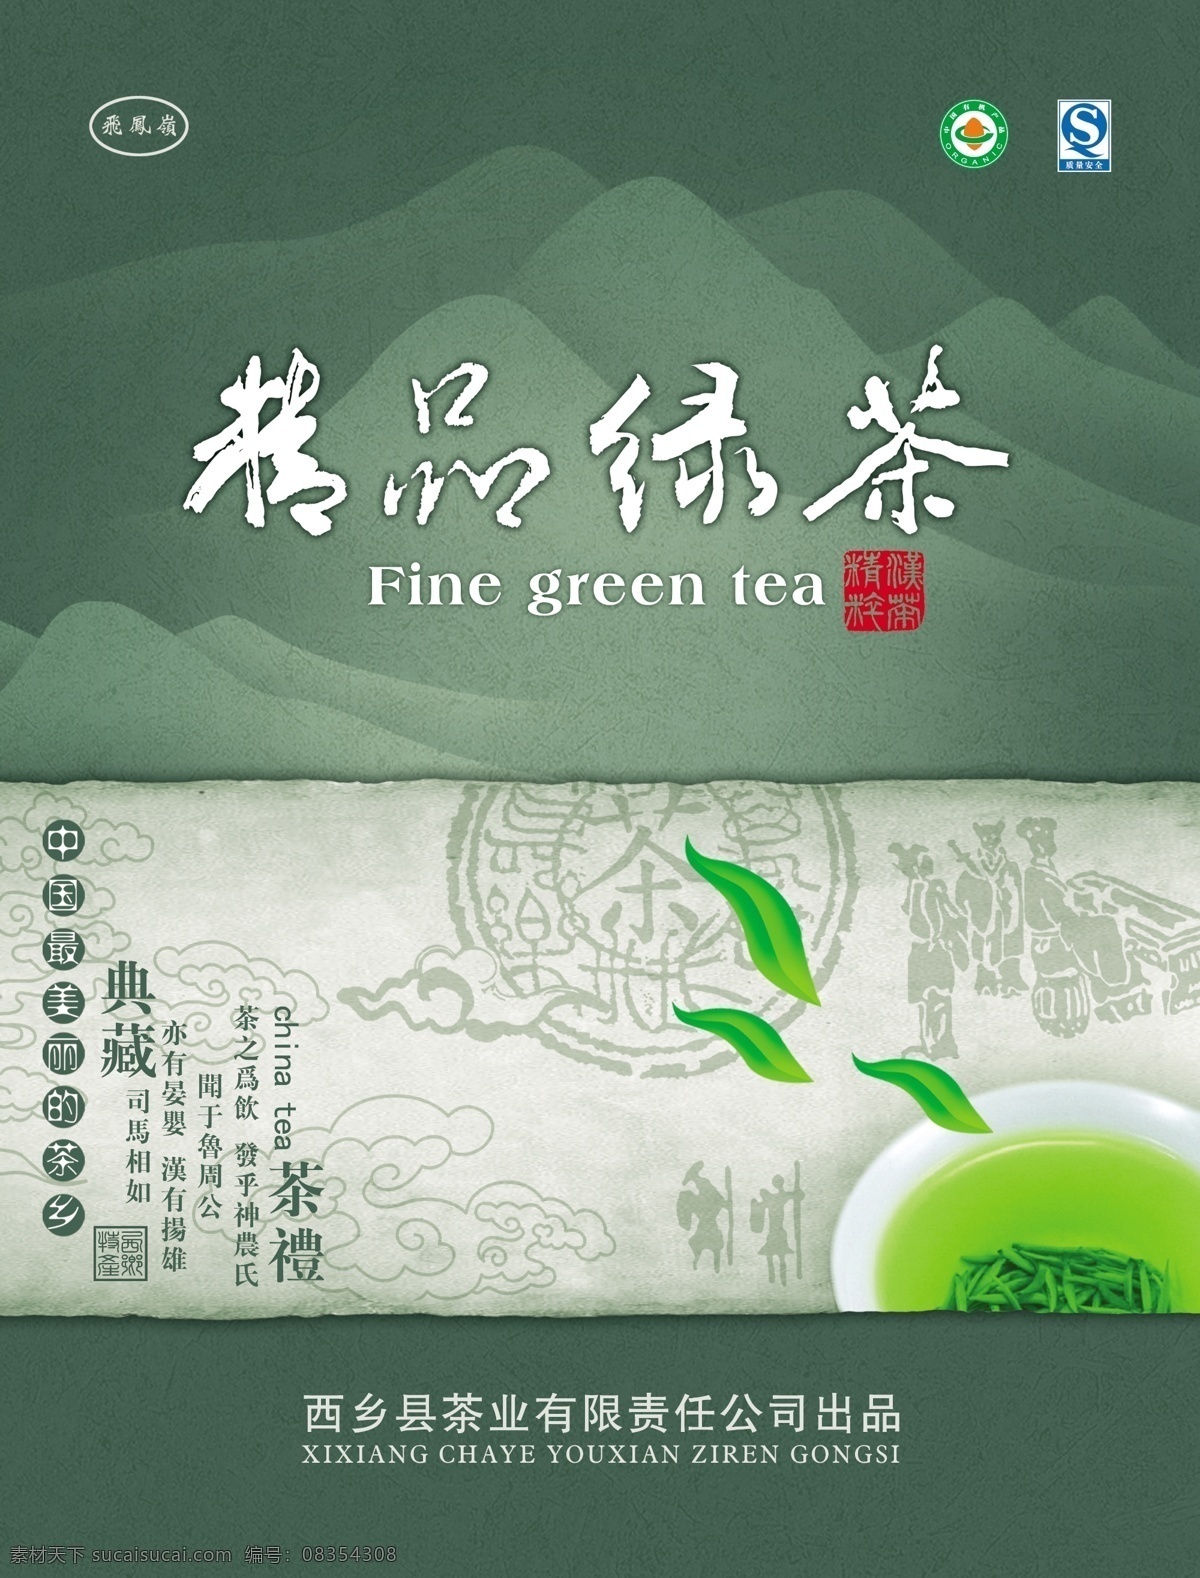 包装 包装设计 茶杯 茶碗 茶叶 广告设计模板 画卷 精品 绿茶 模板下载 绿茶包装 飘香 泡茶 茶汤 山 绿色 饮品 礼盒 源文件 psd源文件 餐饮素材